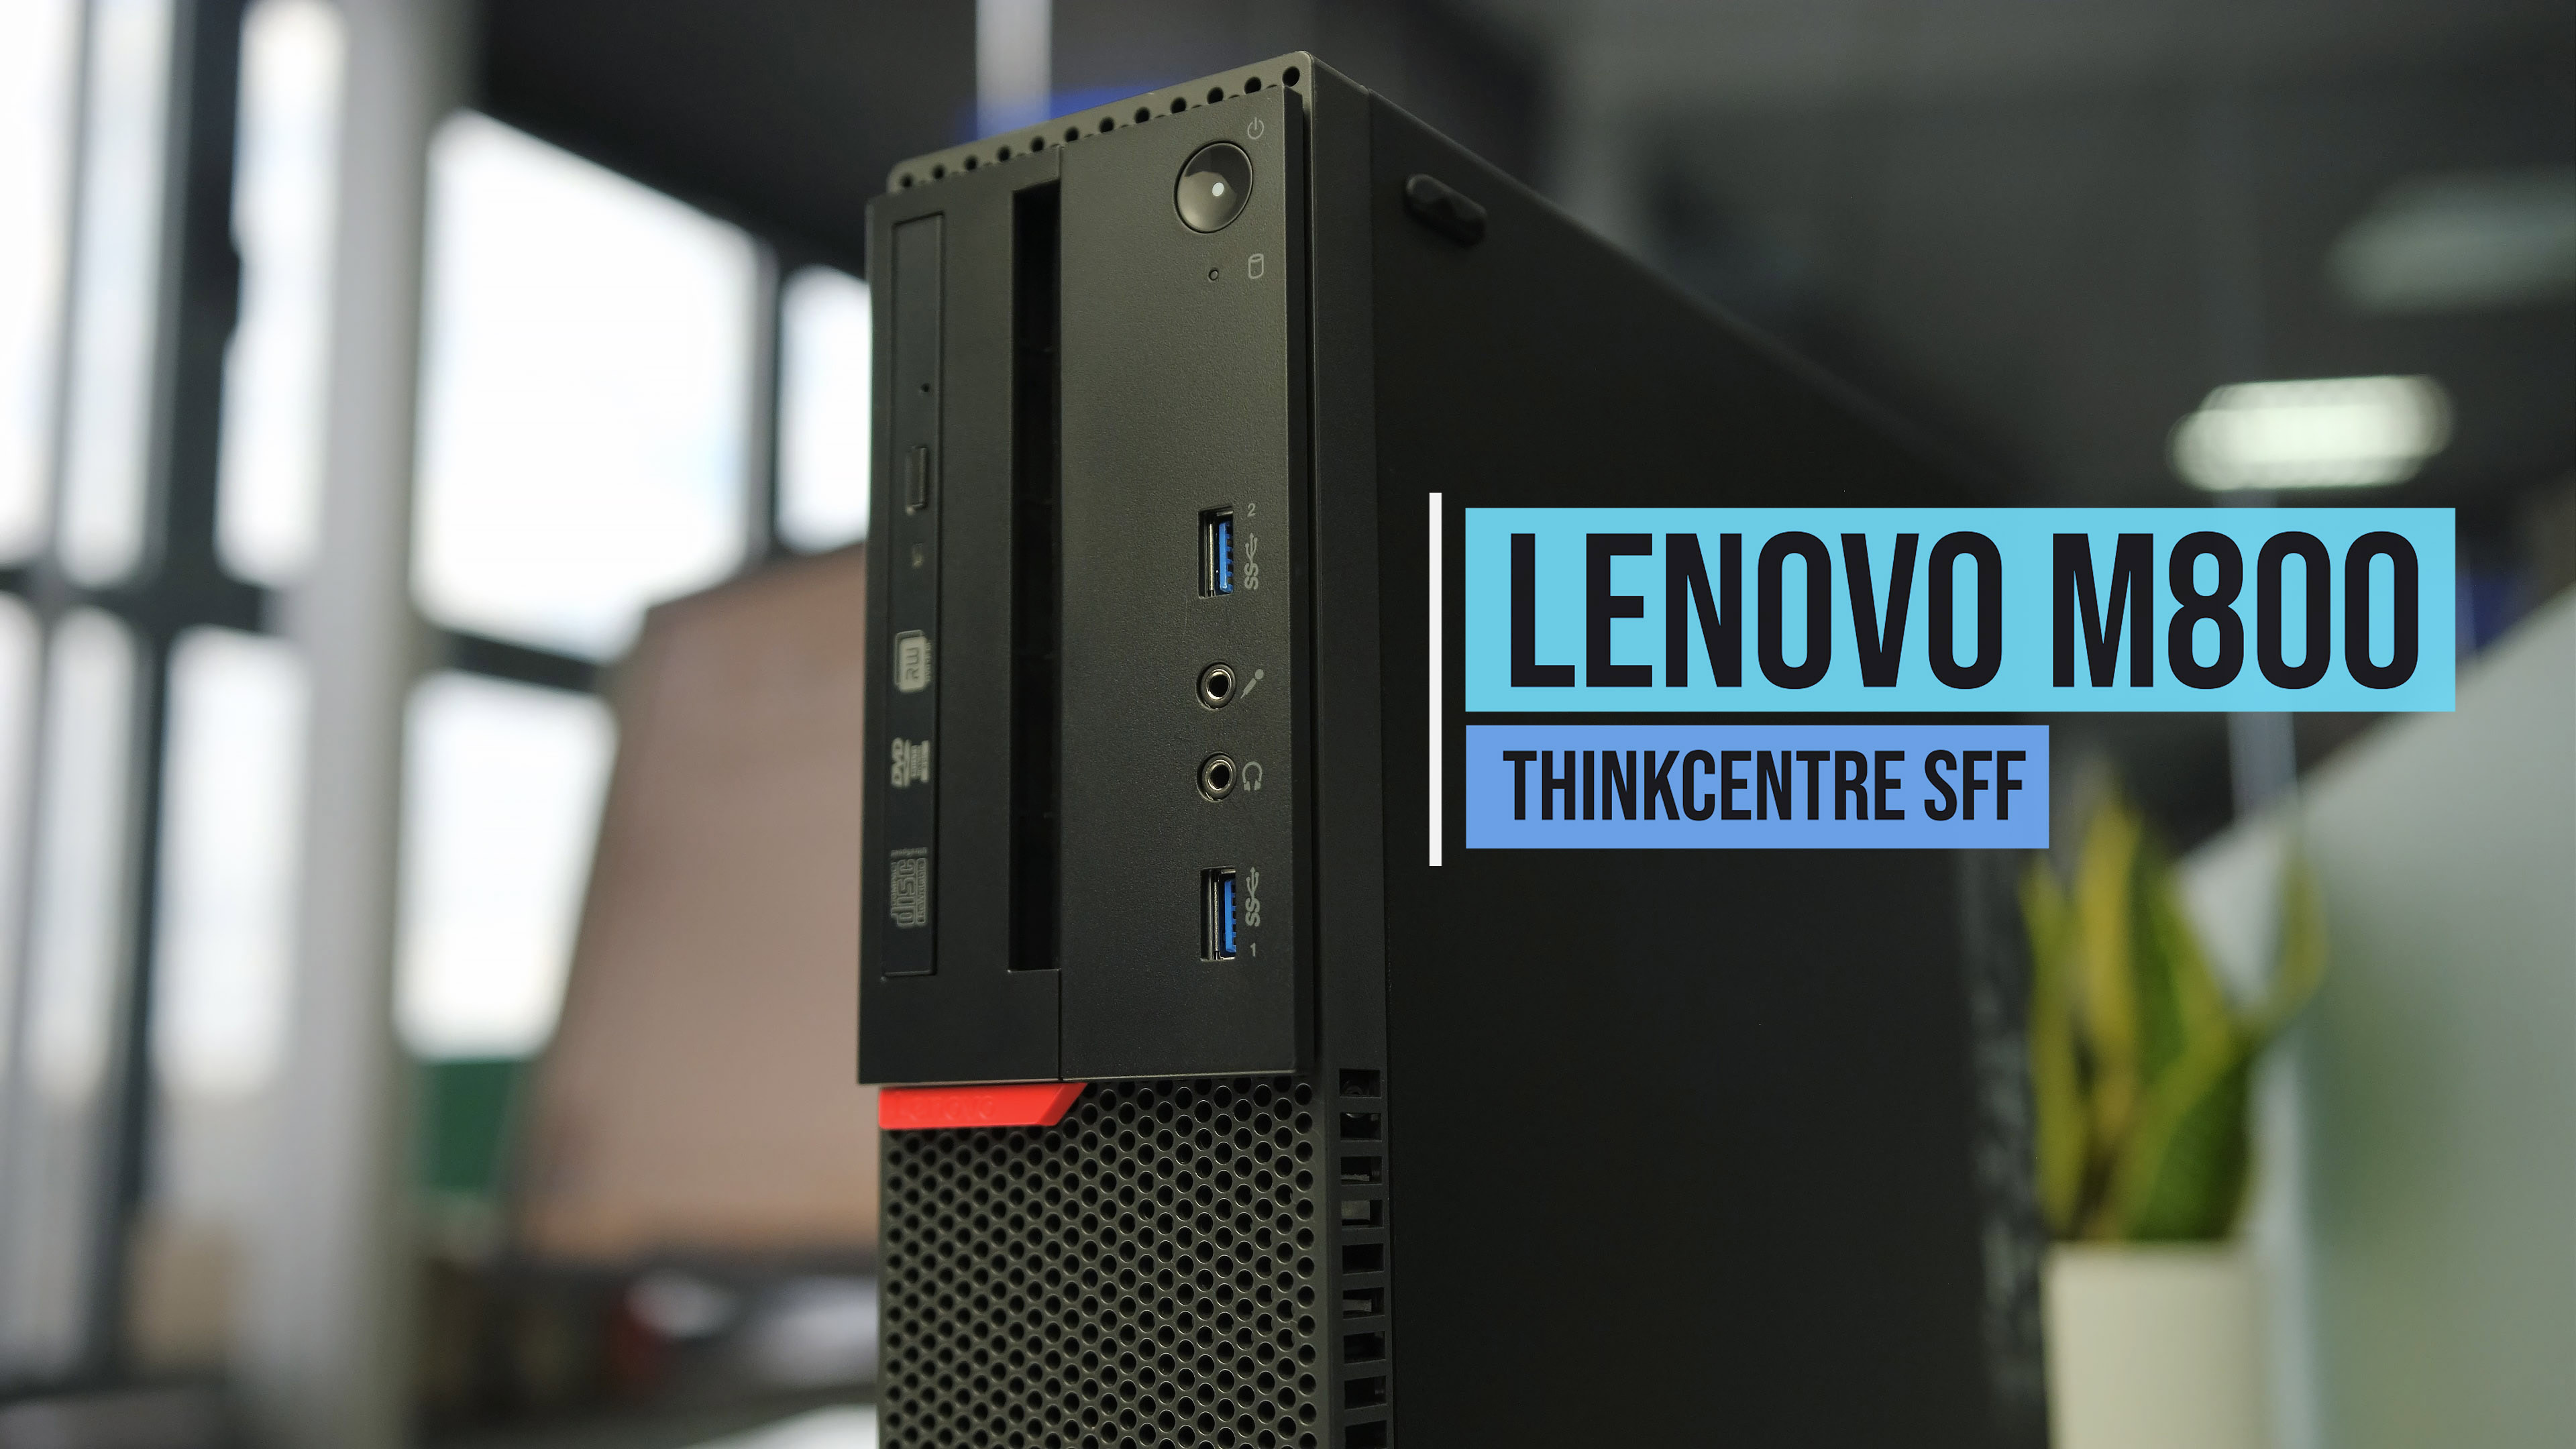 Descubre el Lenovo Thinkcentre M800 [SFF] en Infocomputer